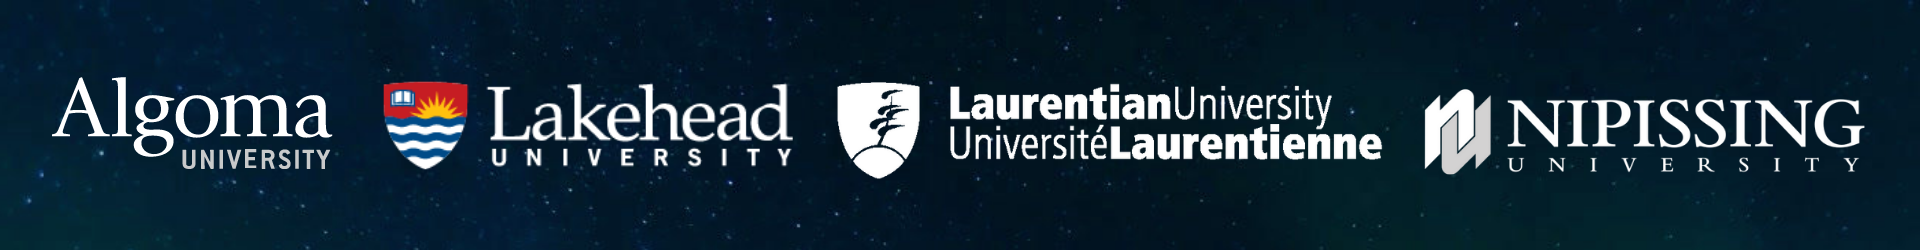 Logos for Algoma University, Lakehead University, Laurentian University, Nipissing University